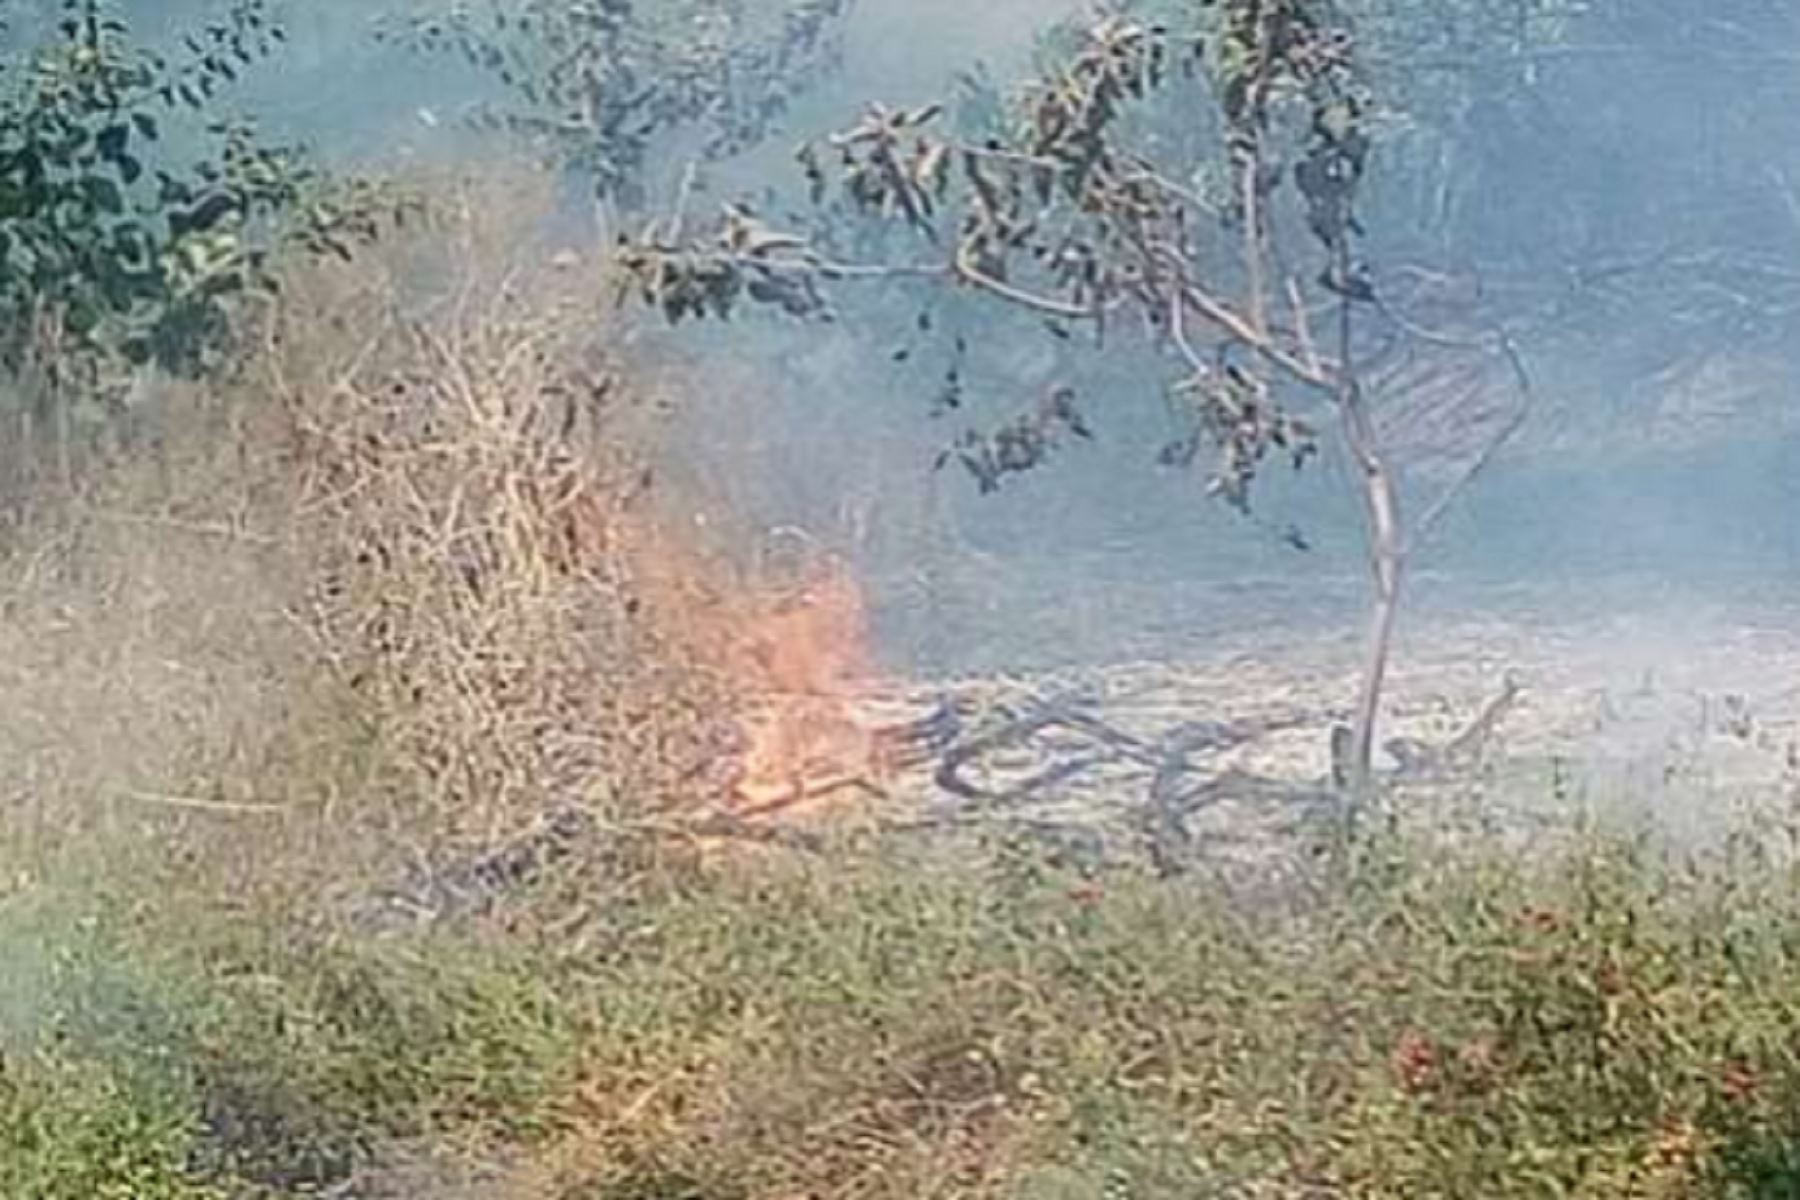 Incendios forestales afectaron a cerca de 400 hectáreas en Lambayeque. ANDINA/Difusión